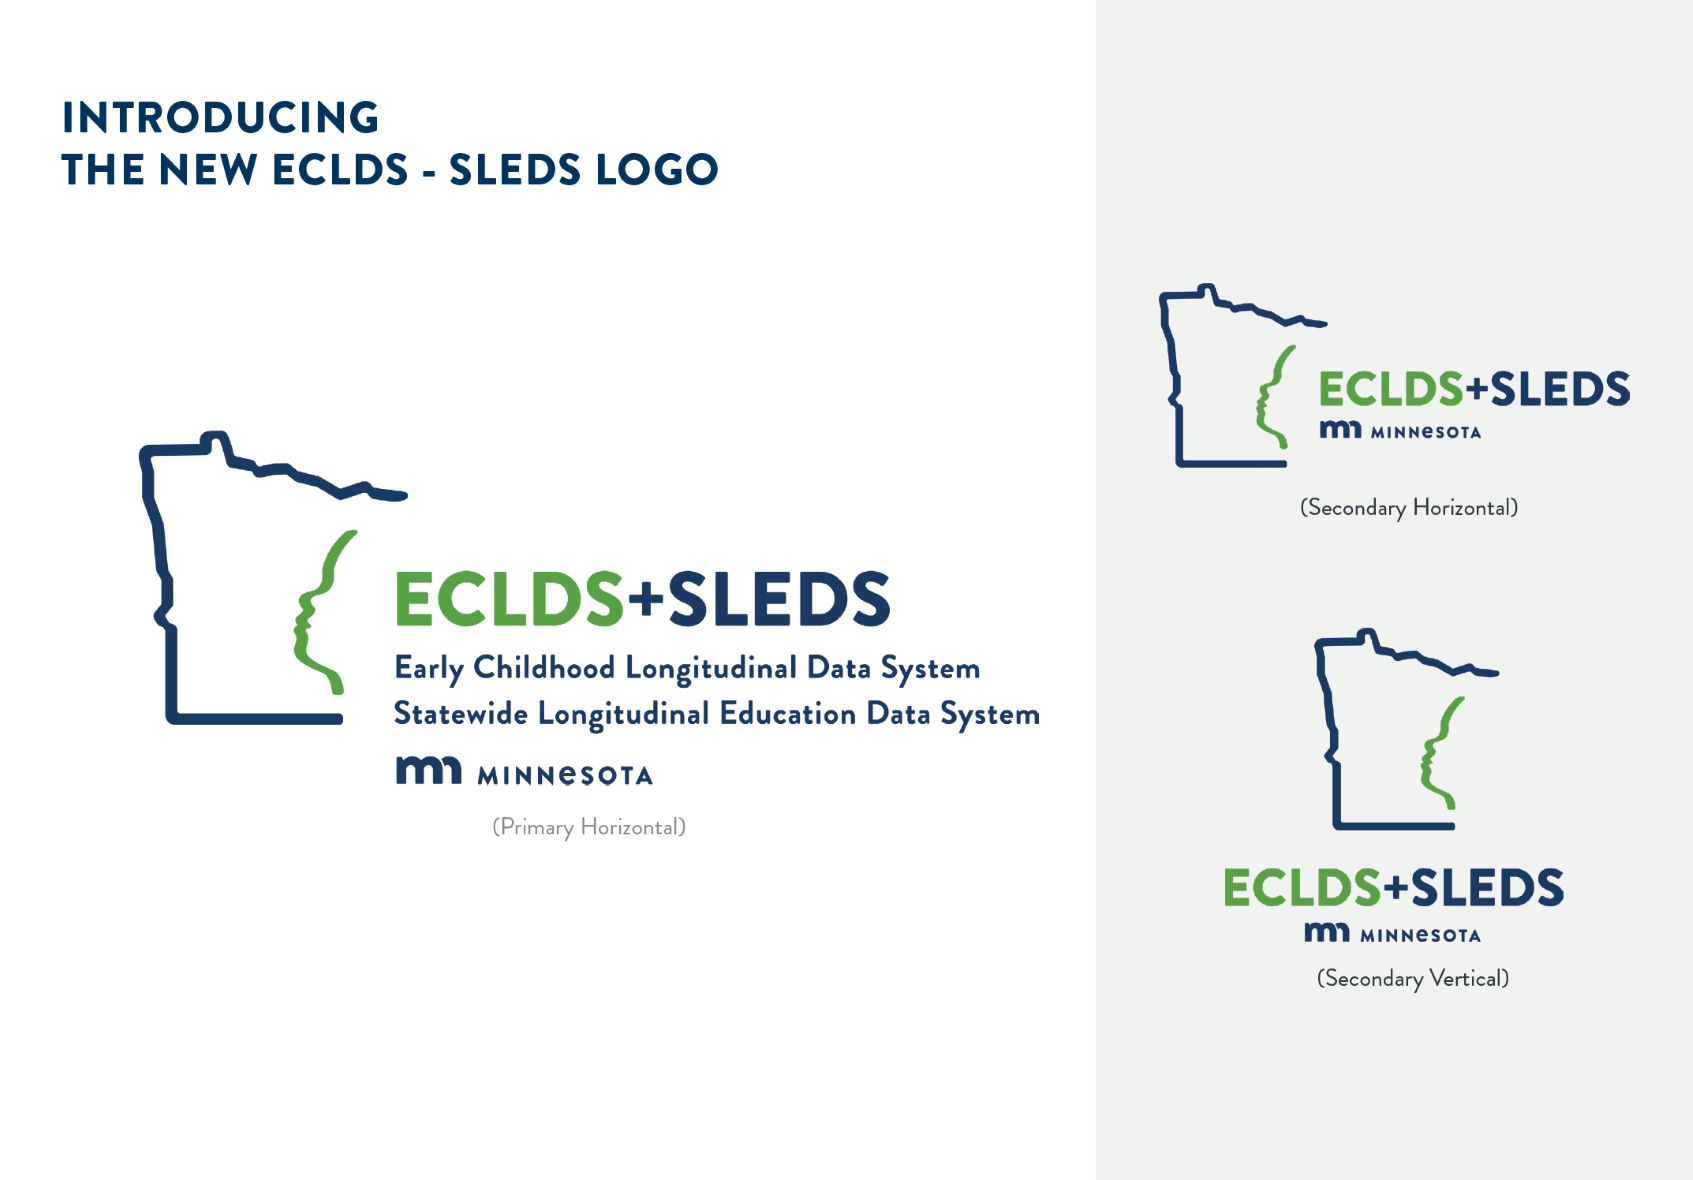 Image of logo: Early Childhood Longitudinal Data System + Statewide Longitudinal Education Data System - Minnesota